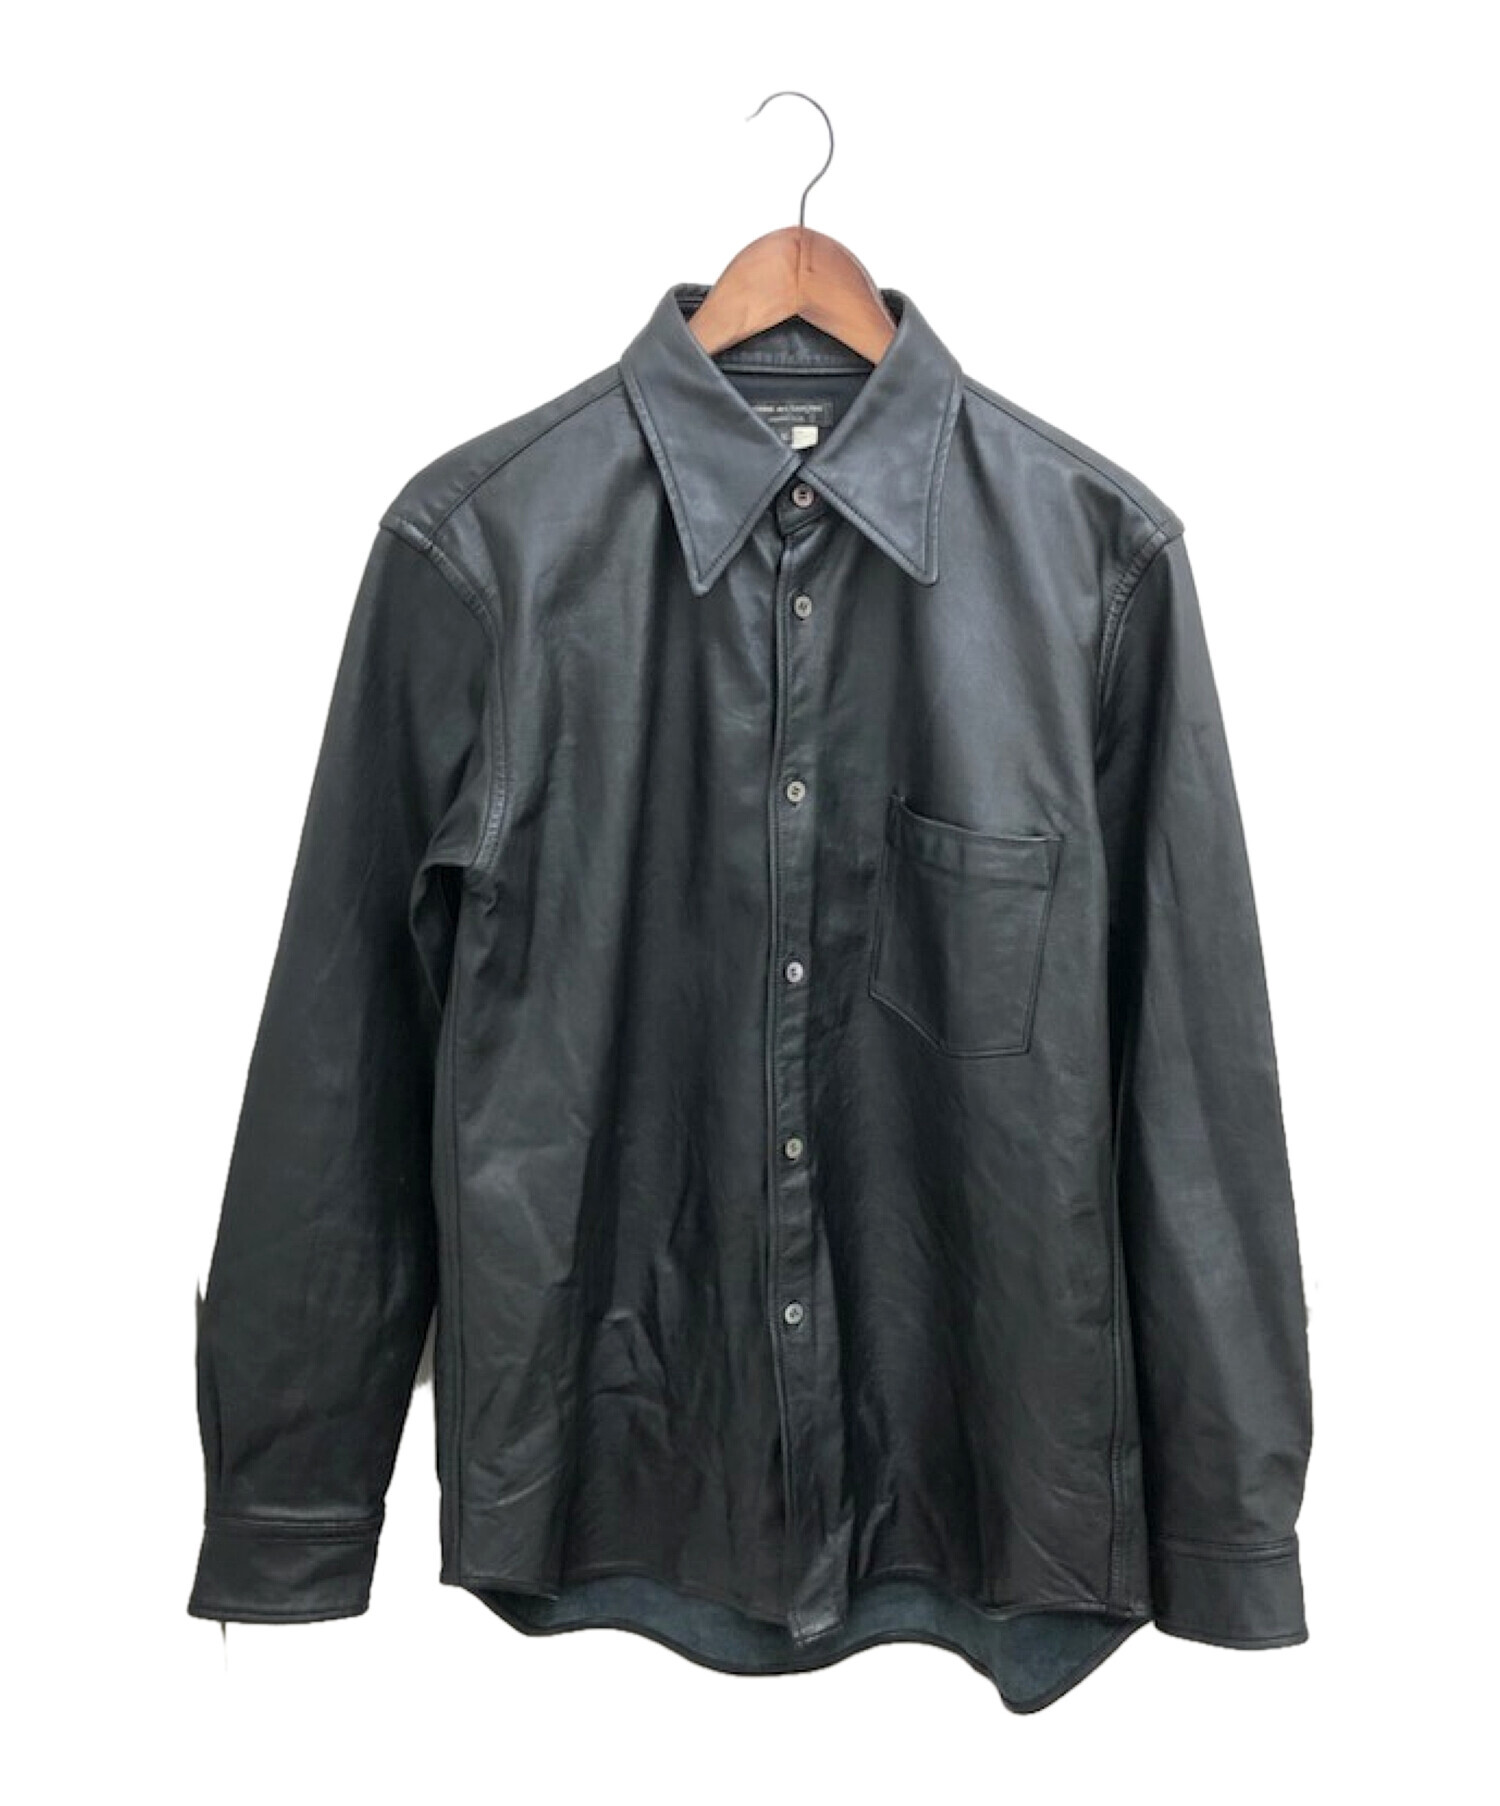 20,640円コムデギャルソン オムプリュス レザーシャツ ブラック メンズMサイズ